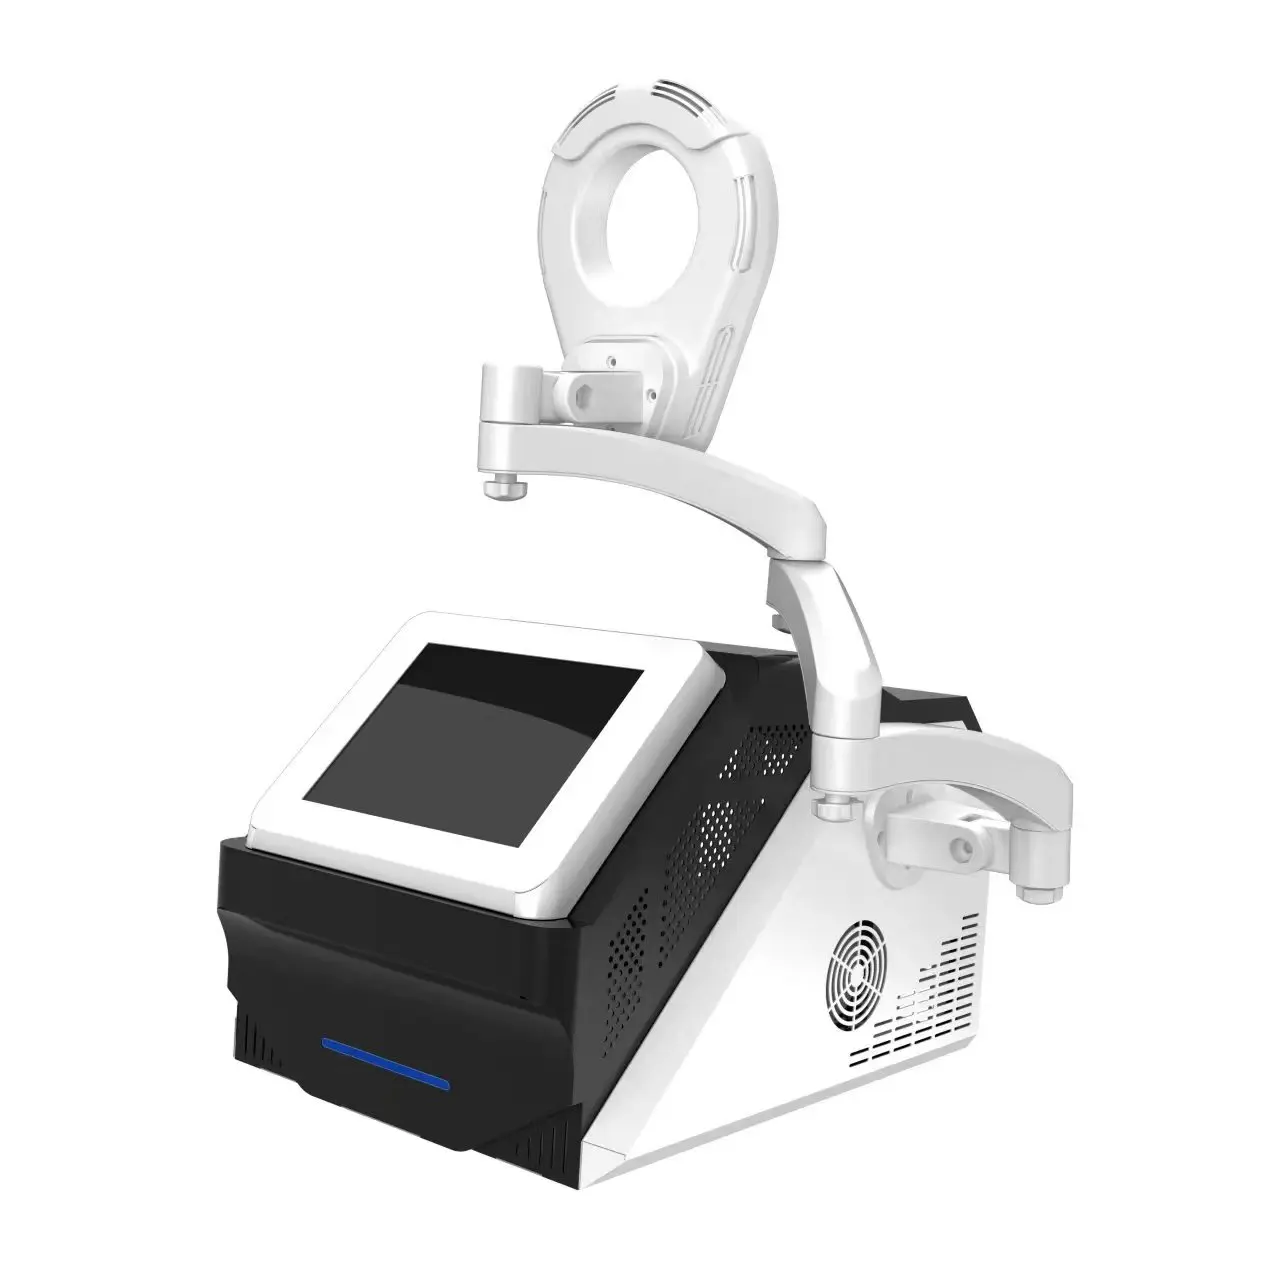 Portable EMS sculpting machine stimulator electric muscle stimulator professional slimming machine